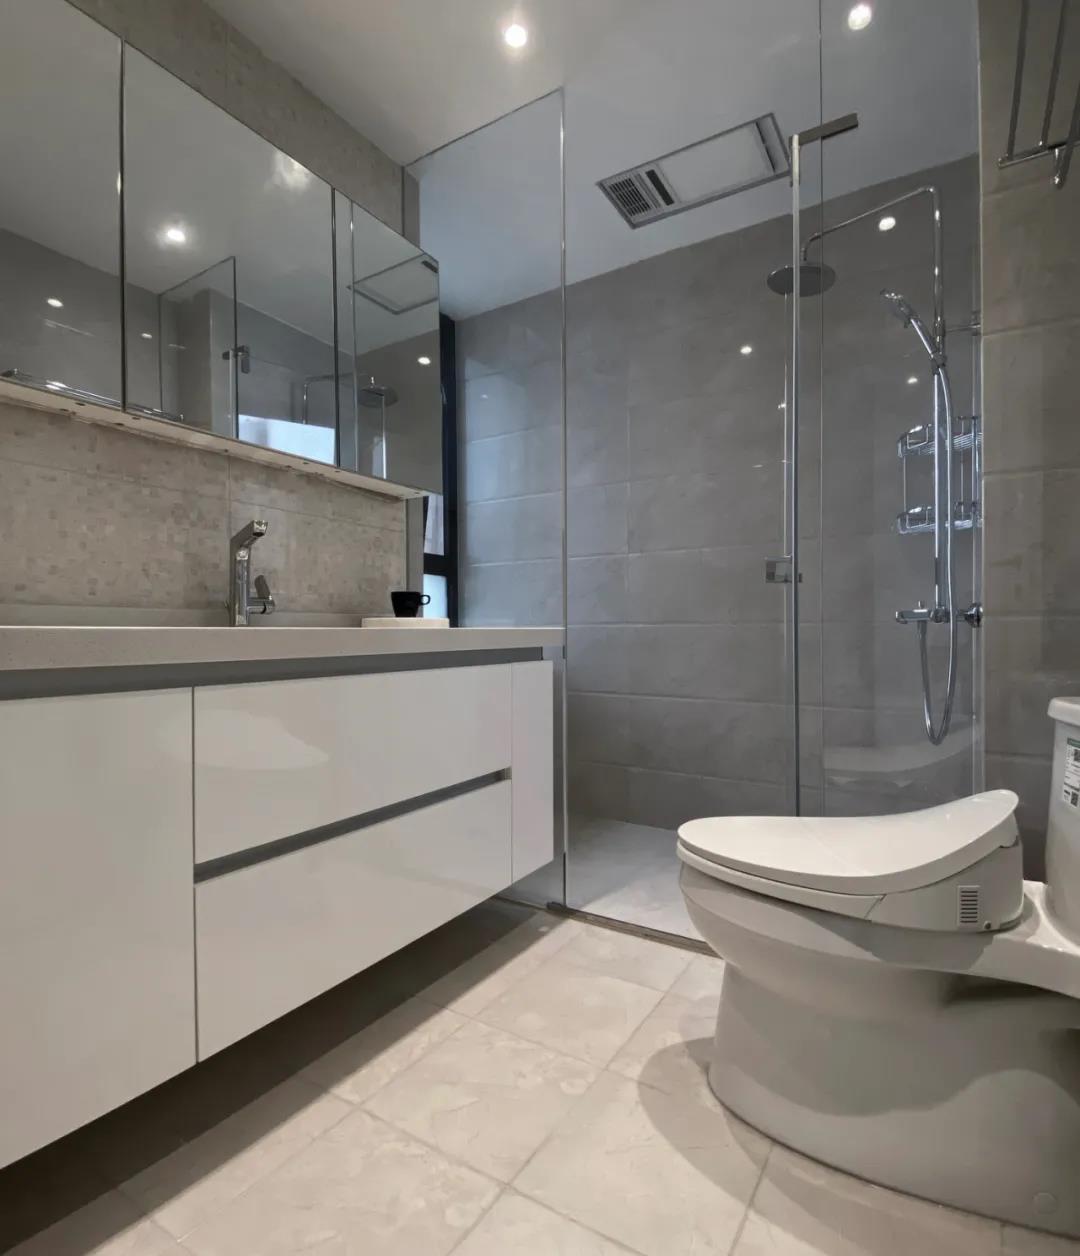 卫生间以白色为主基调，增加了空间的舒适感和温度，局部采用了干湿分离设计。